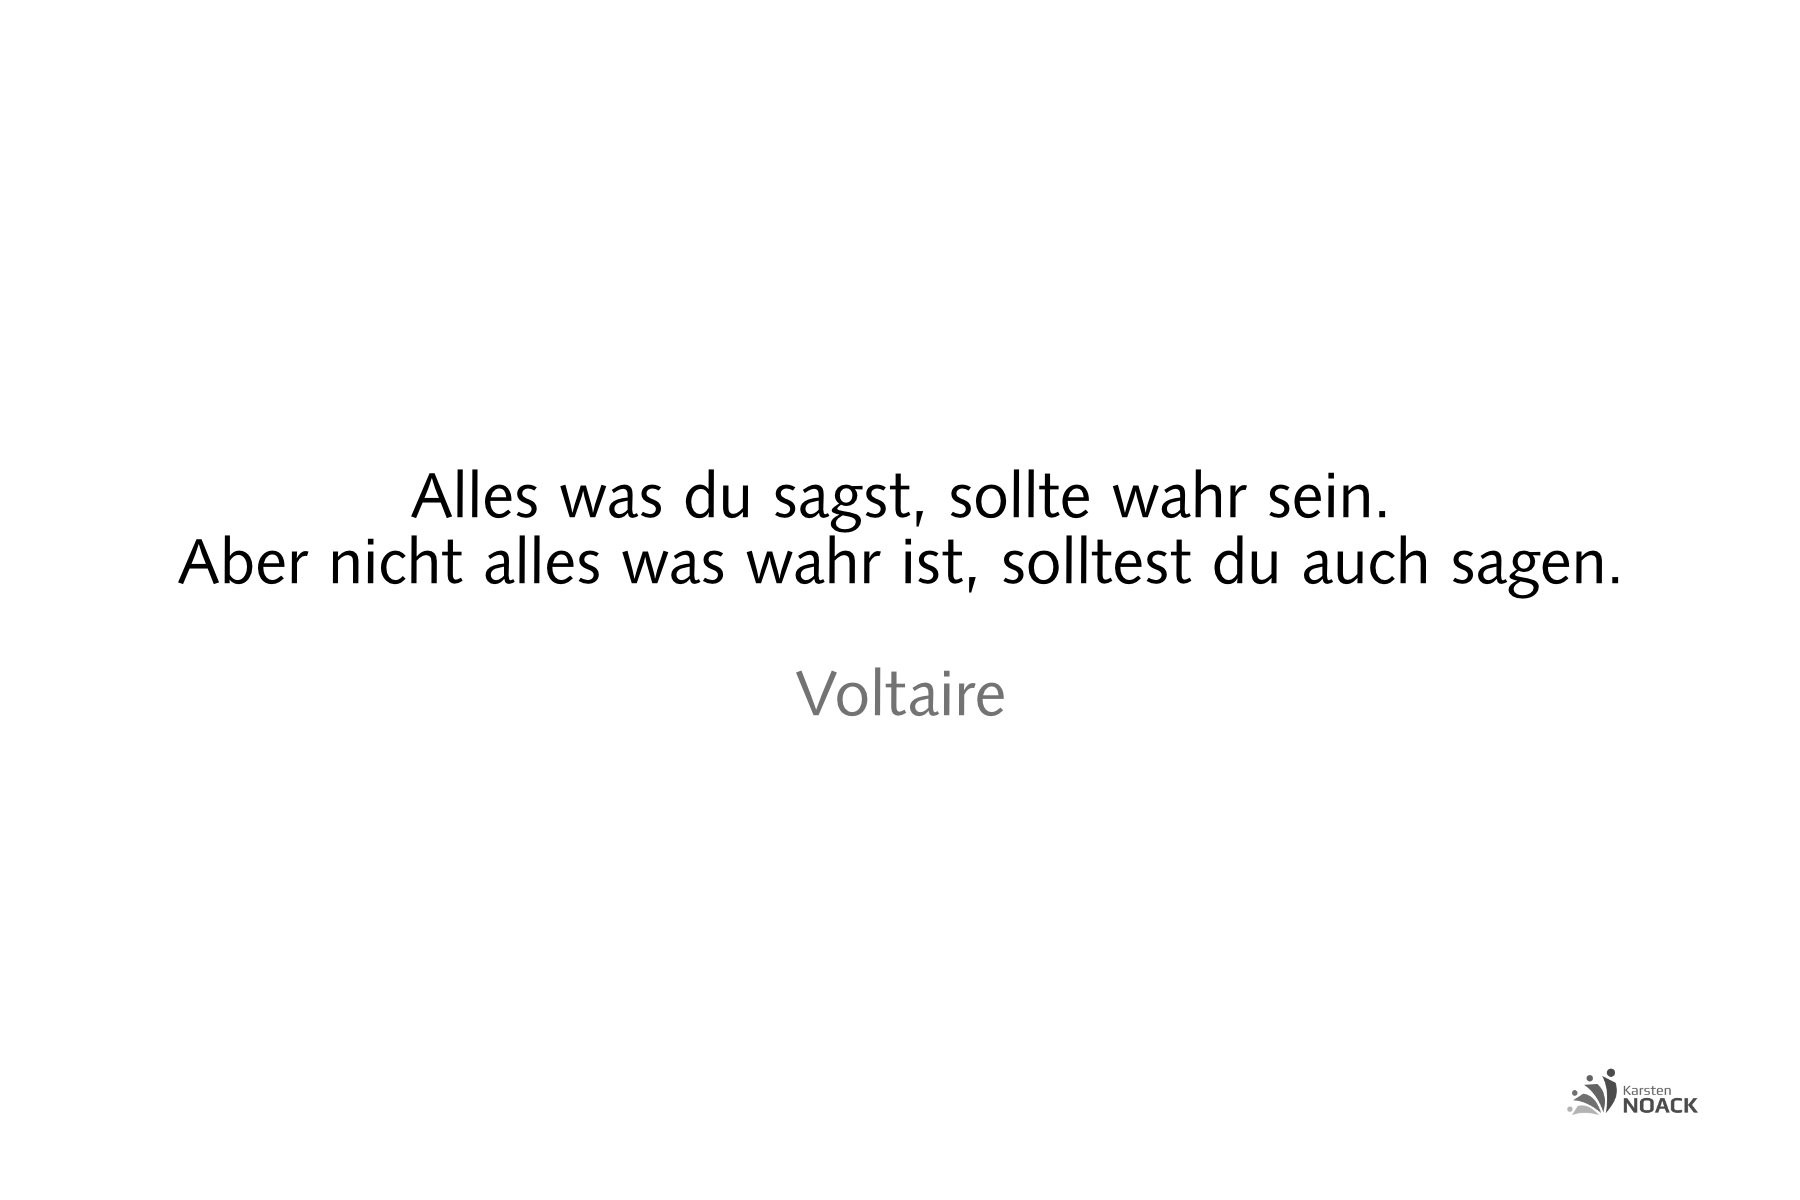 VoltaireAlles was du sagst, sollte wahr sein. Aber nicht alles was wahr ist, solltest du auch sagen. Voltaire